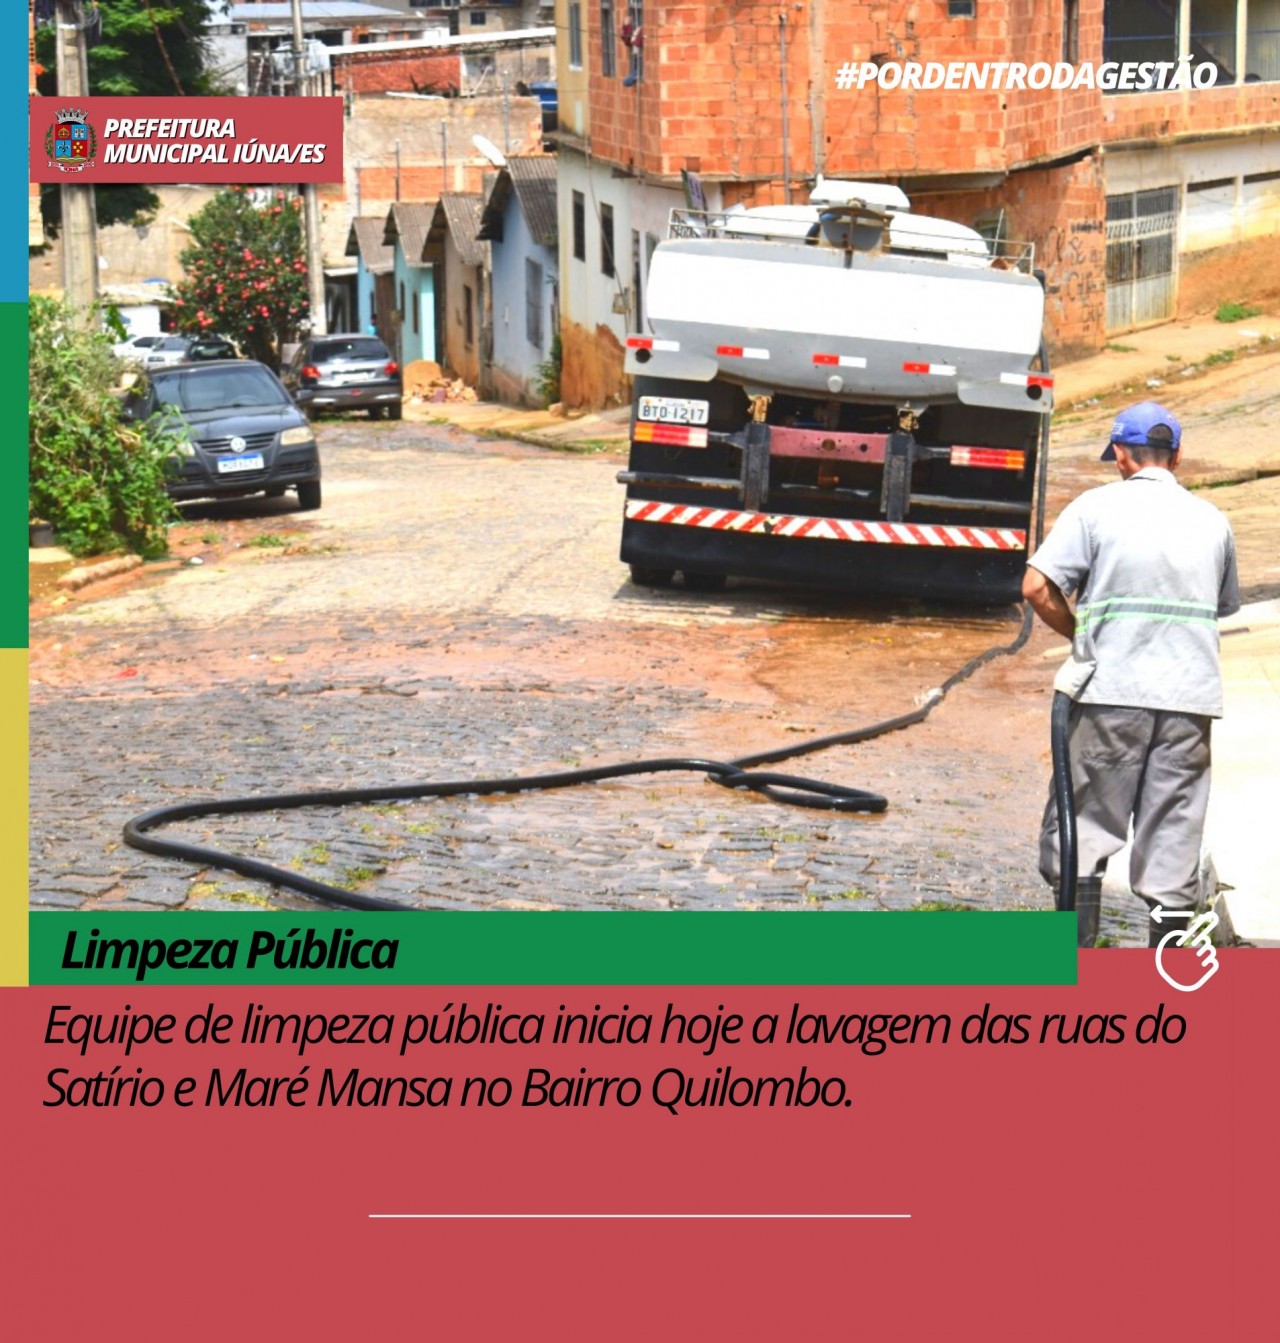 Equipe de limpeza pública inicia hoje a lavagem das ruas do Satírio e Maré Mansa no Bairro Quilombo